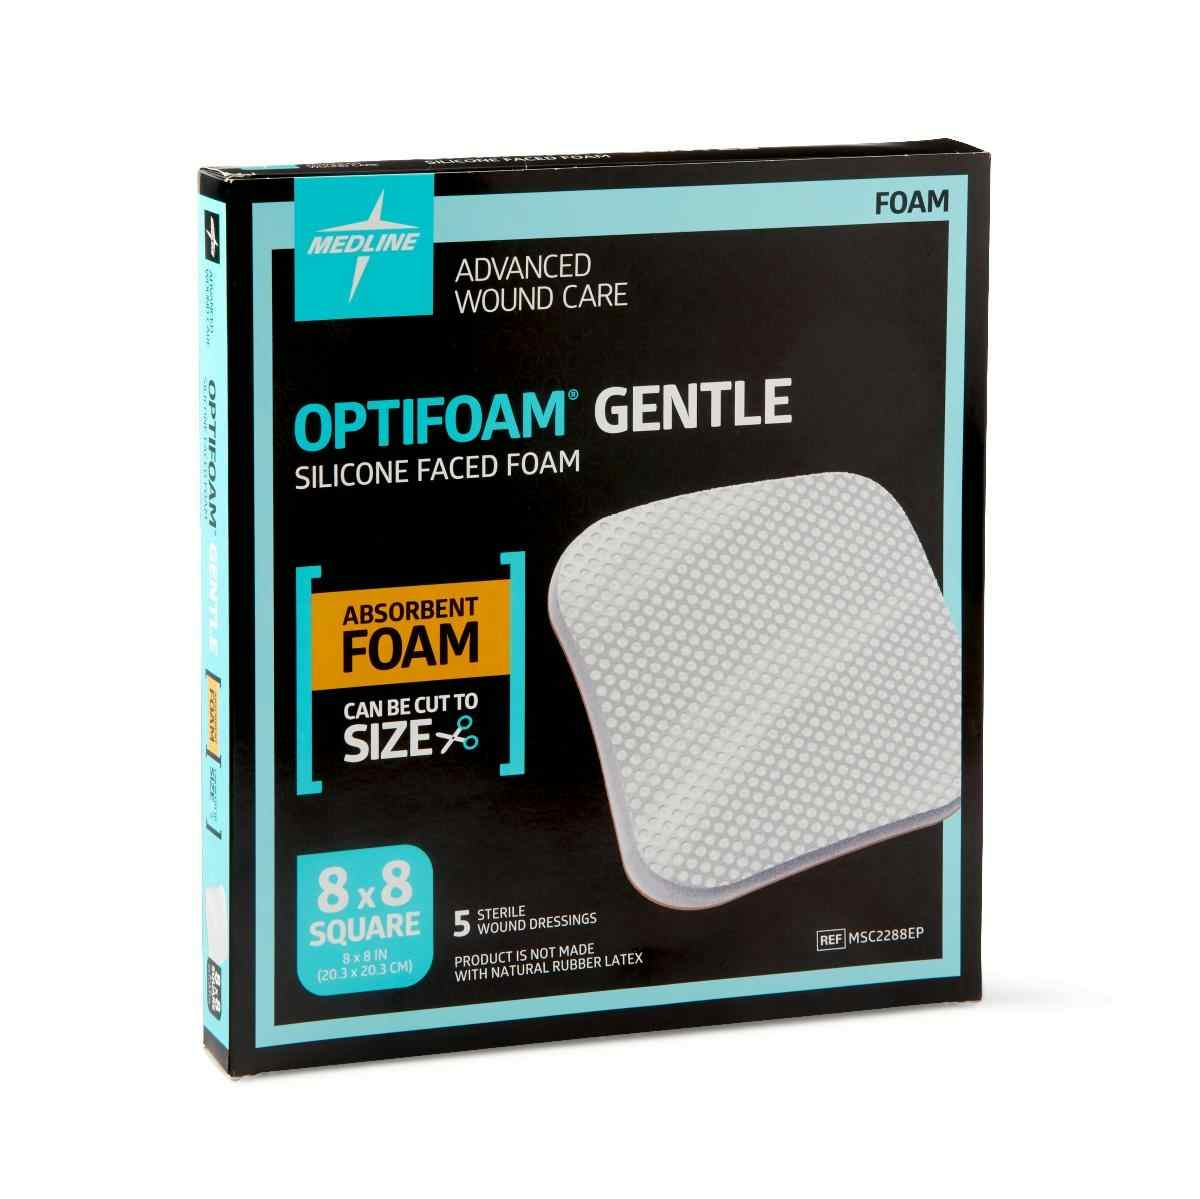 Medline Optifoam Gentle Silicone Faced Foam Dressing, MSC2288EPZ, 8" X 8" - Box of 5